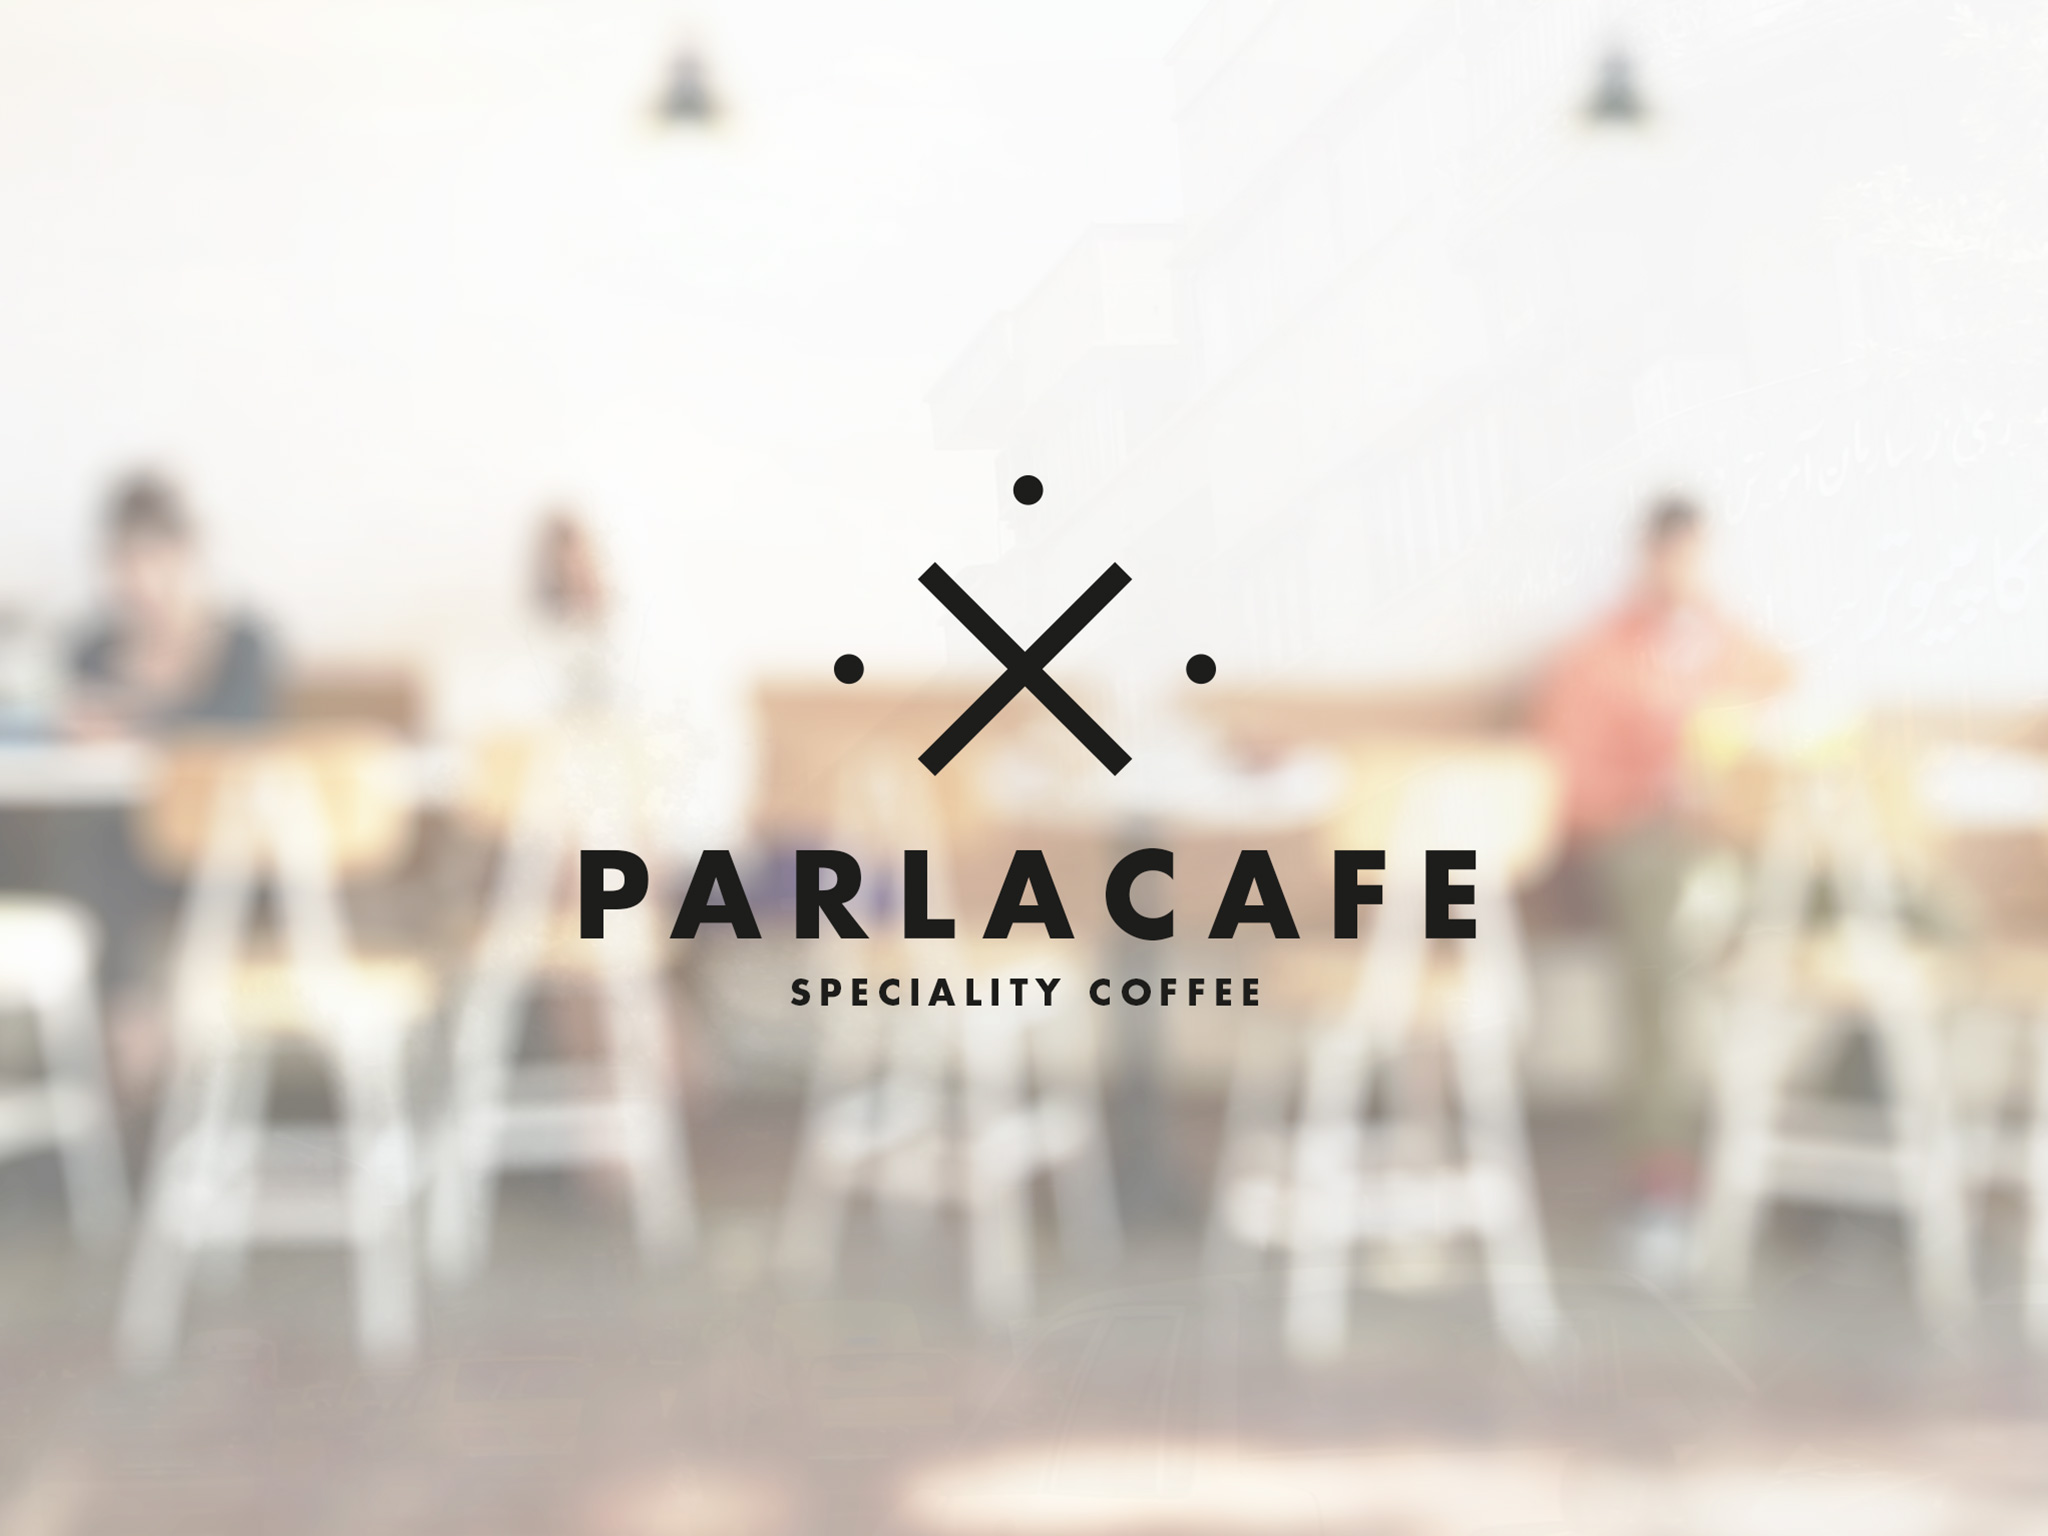 Parla Cafe